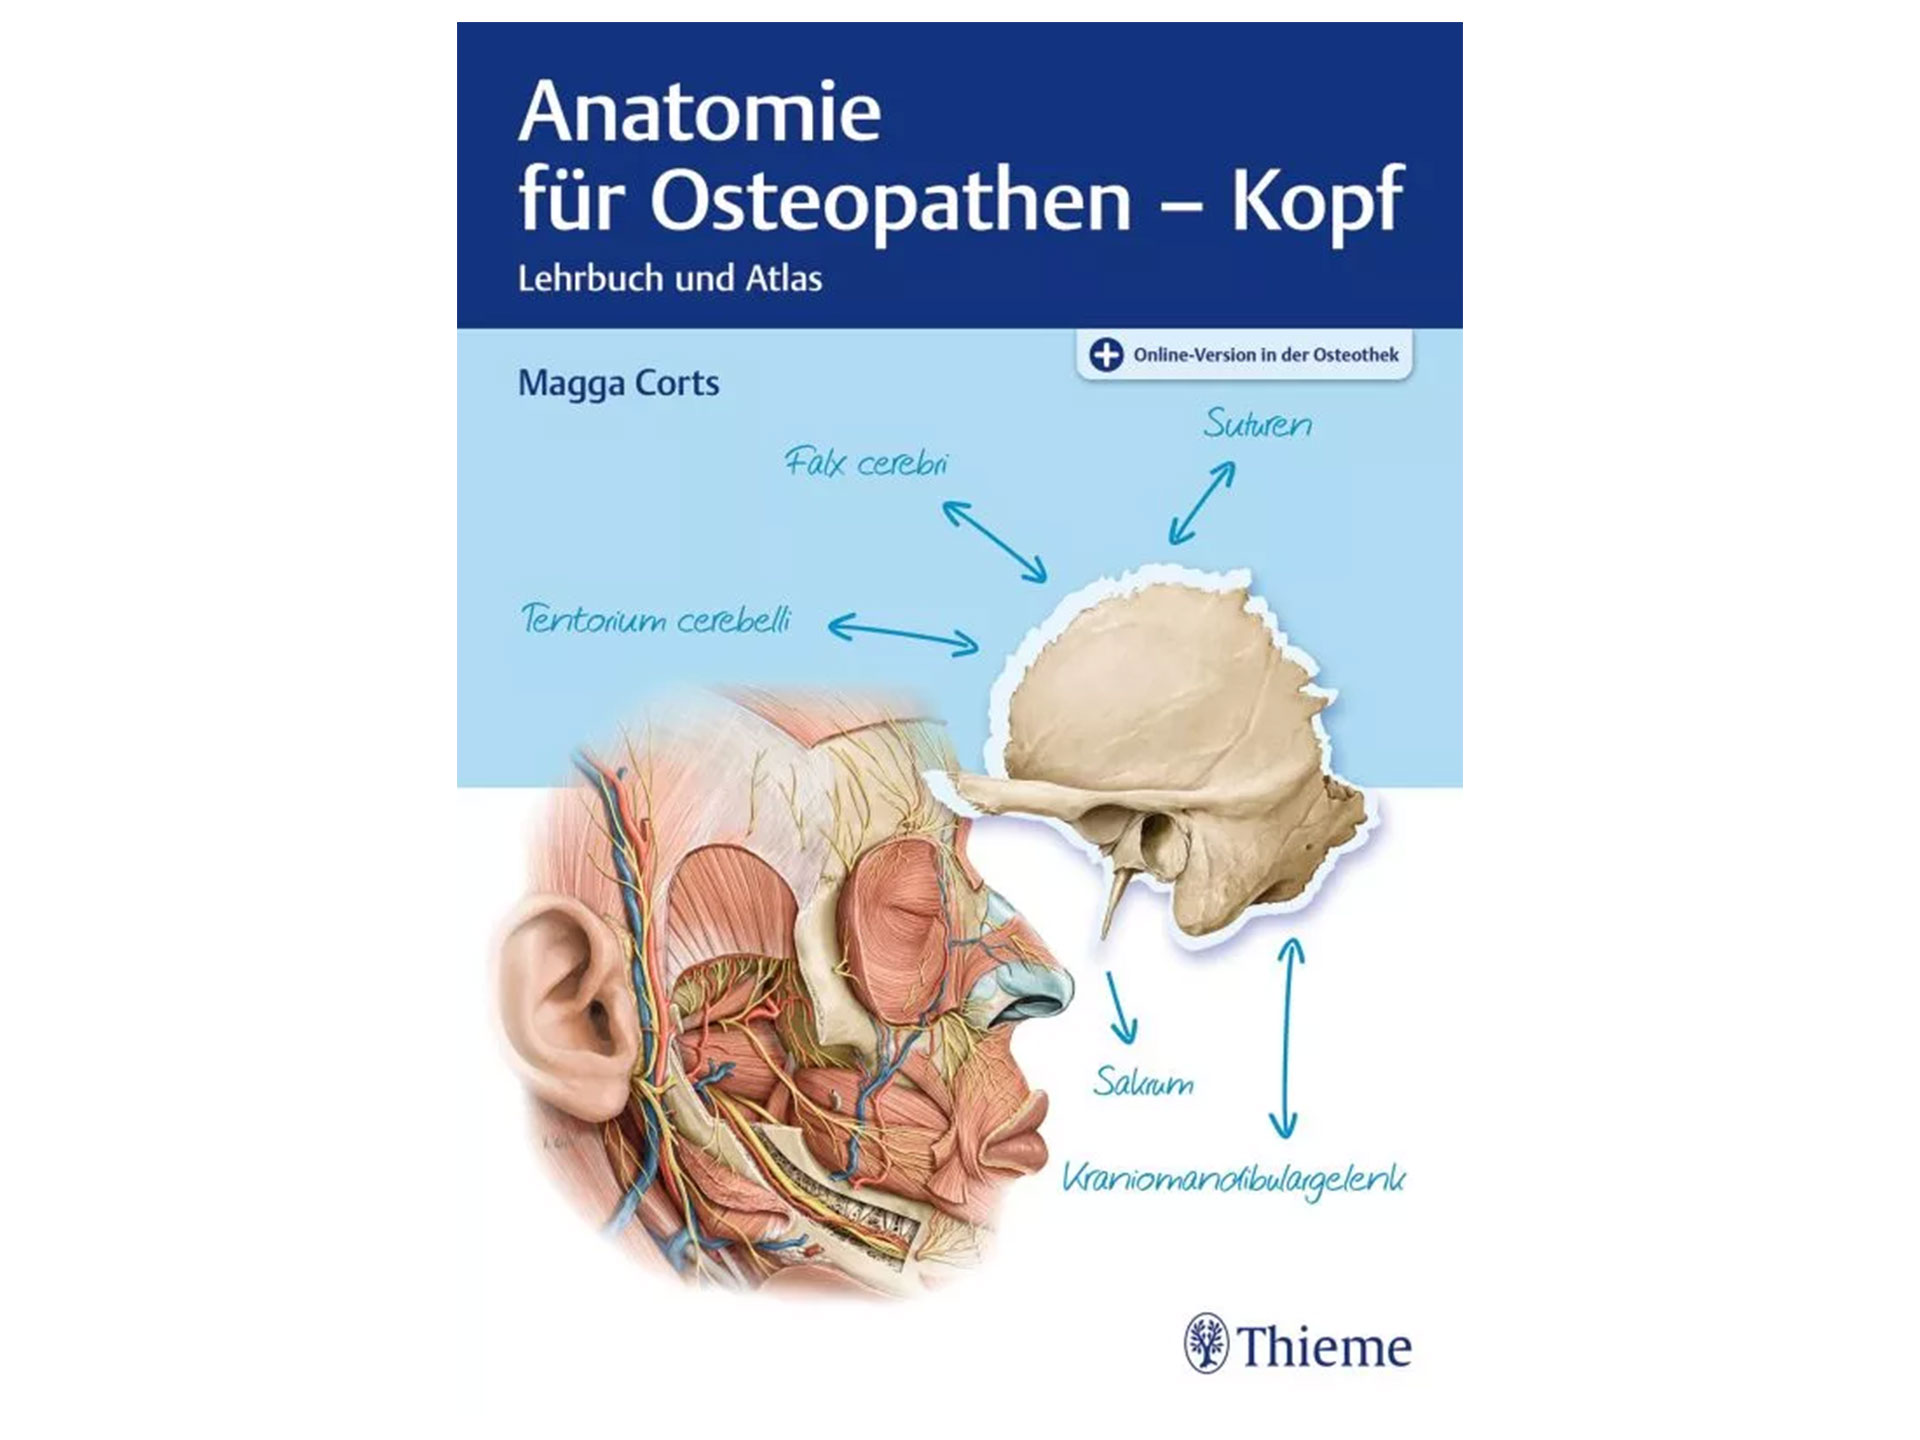 Anatomie für Osteopathen - Kopf